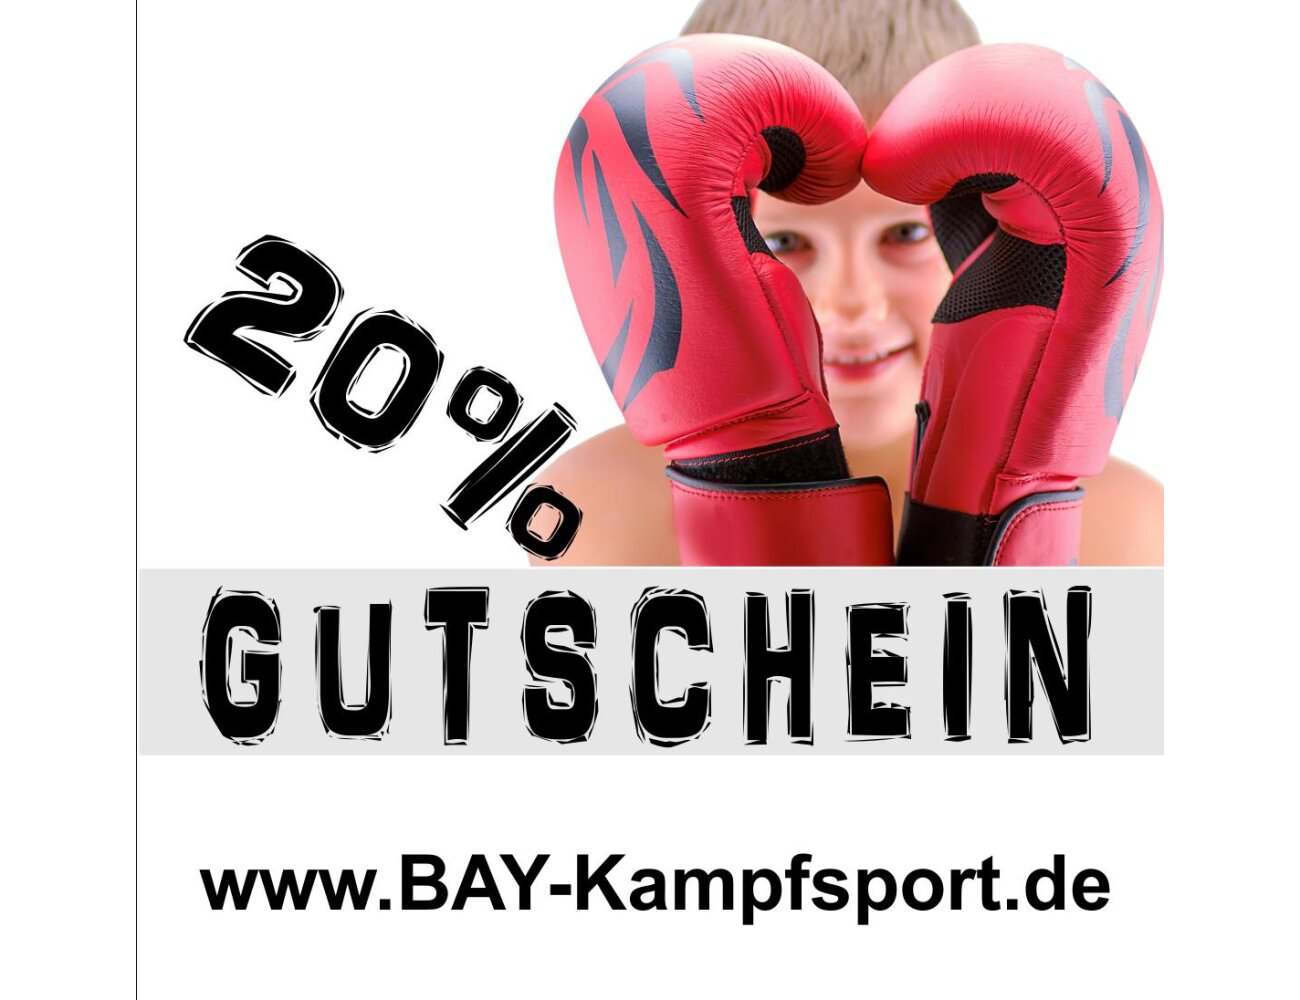 Gutschein / Rabatt Code / Kampfsportartikel / BAY-KAMPFSPORT